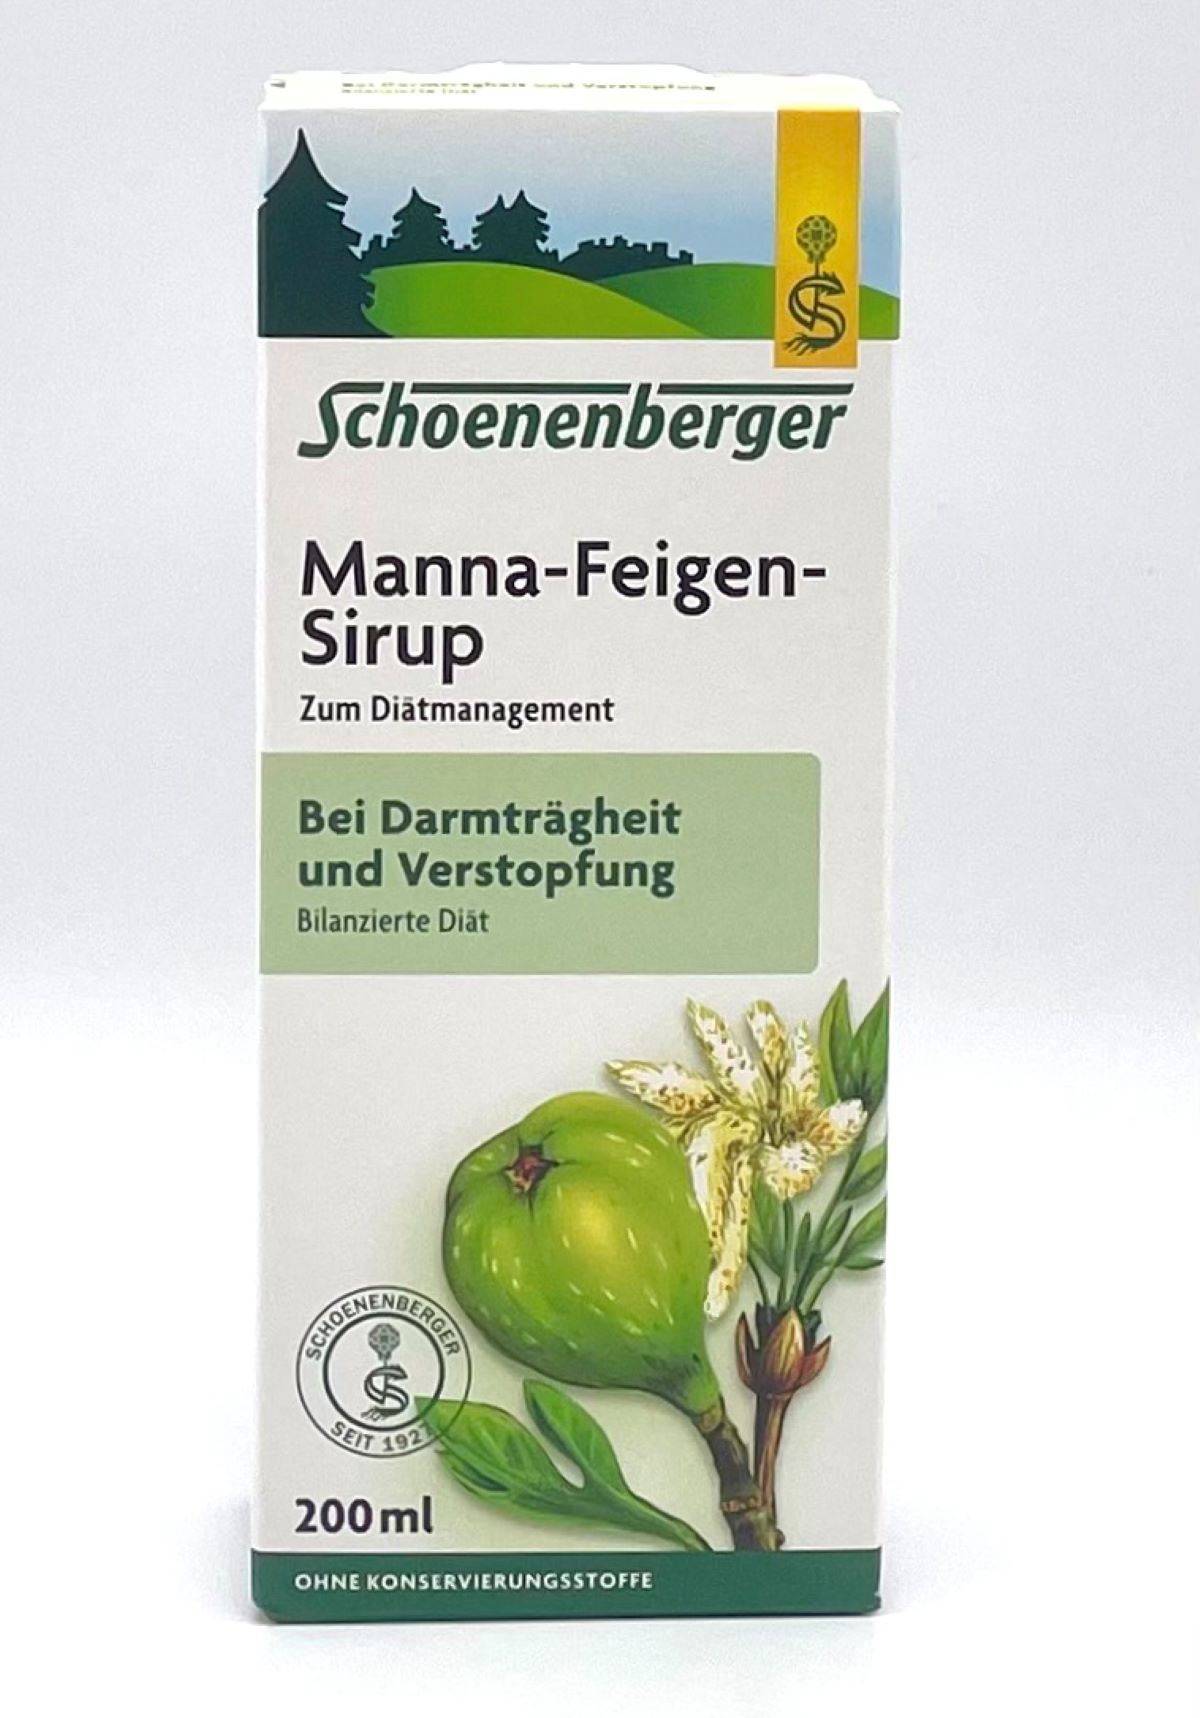 Schoenenberger Manna-Feigen-Sirup 200ml